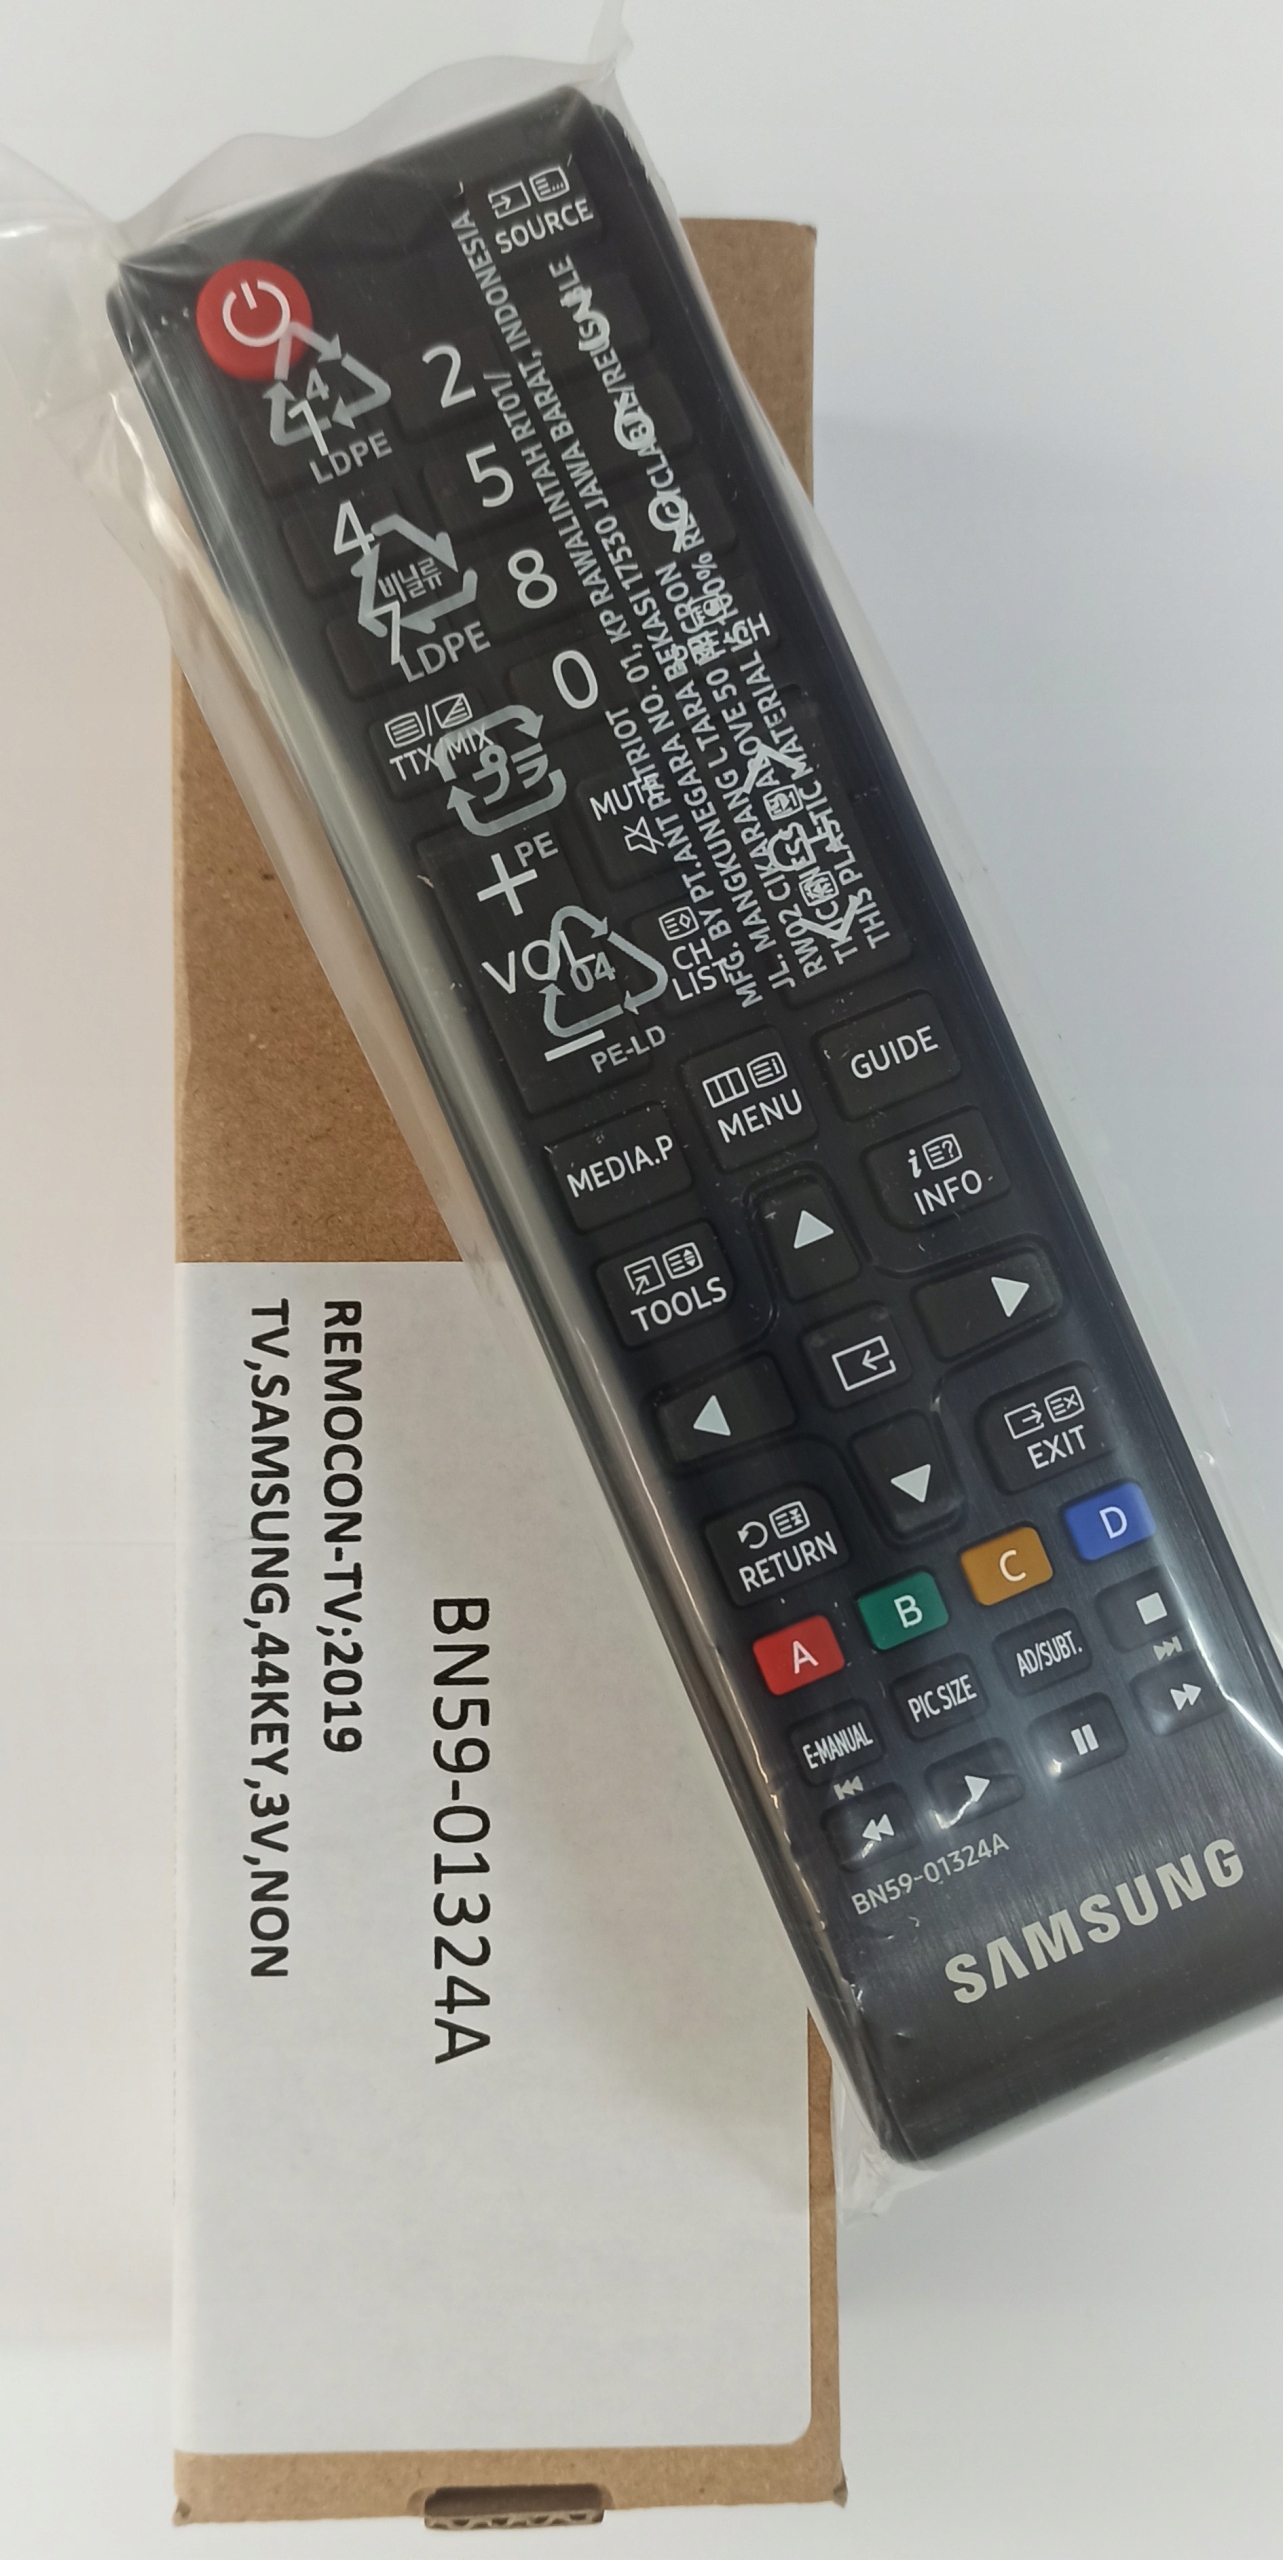  оригінальний пульт дистанційного керування для Samsung TV всі моделі. Бренд Samsung